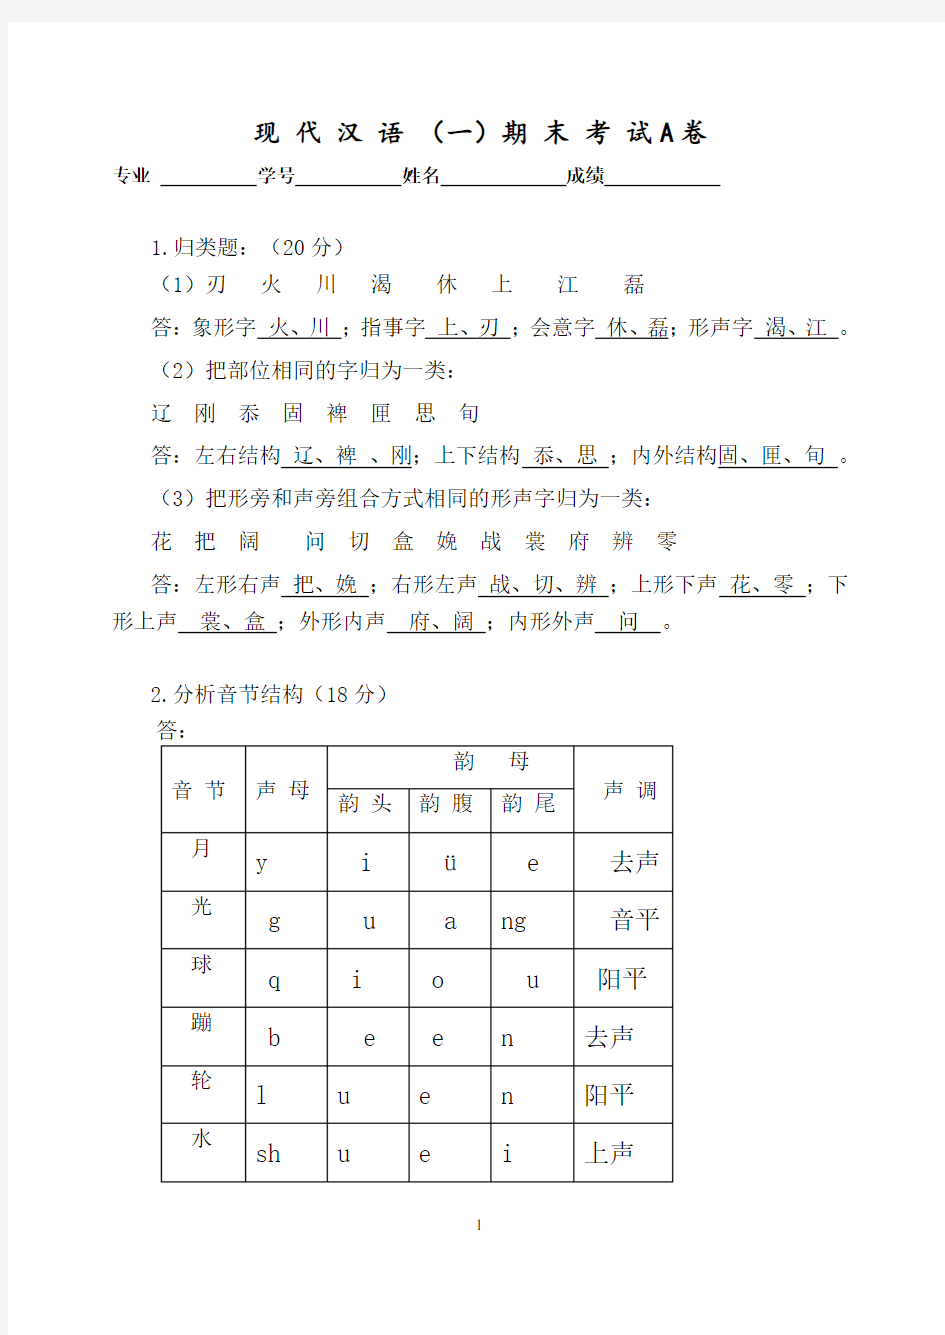 【答案满分】福建师范大学18年8月课程考试《现代汉语(一)》作业考核试题答案